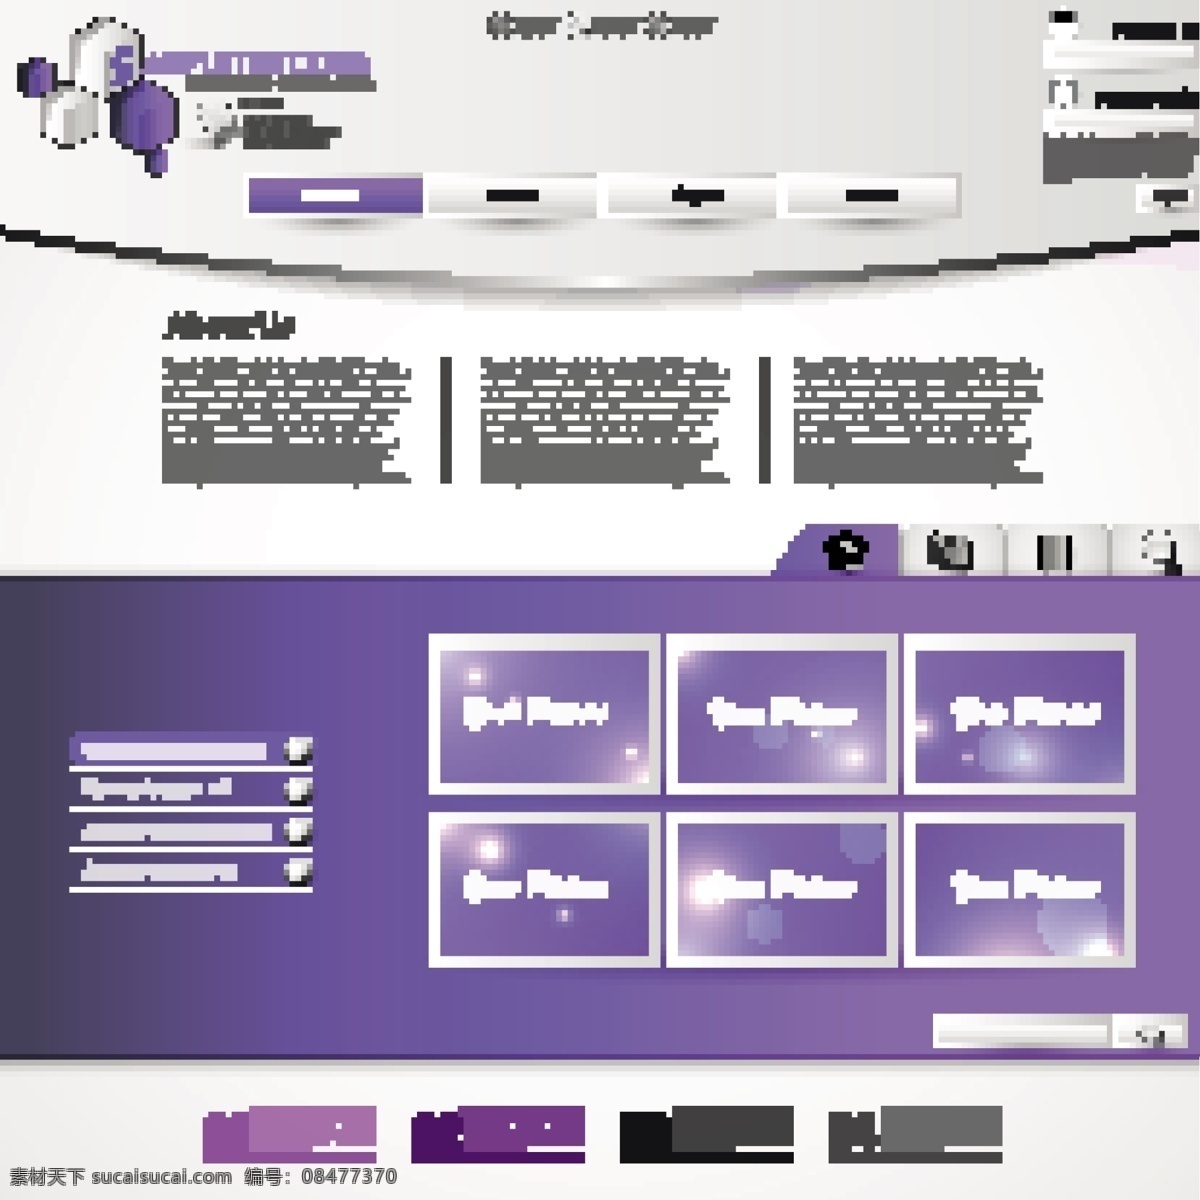 紫色 风格 网页设计 网页模板 网站模板 网站设计 网页界面模板 其他模板 矢量素材 白色